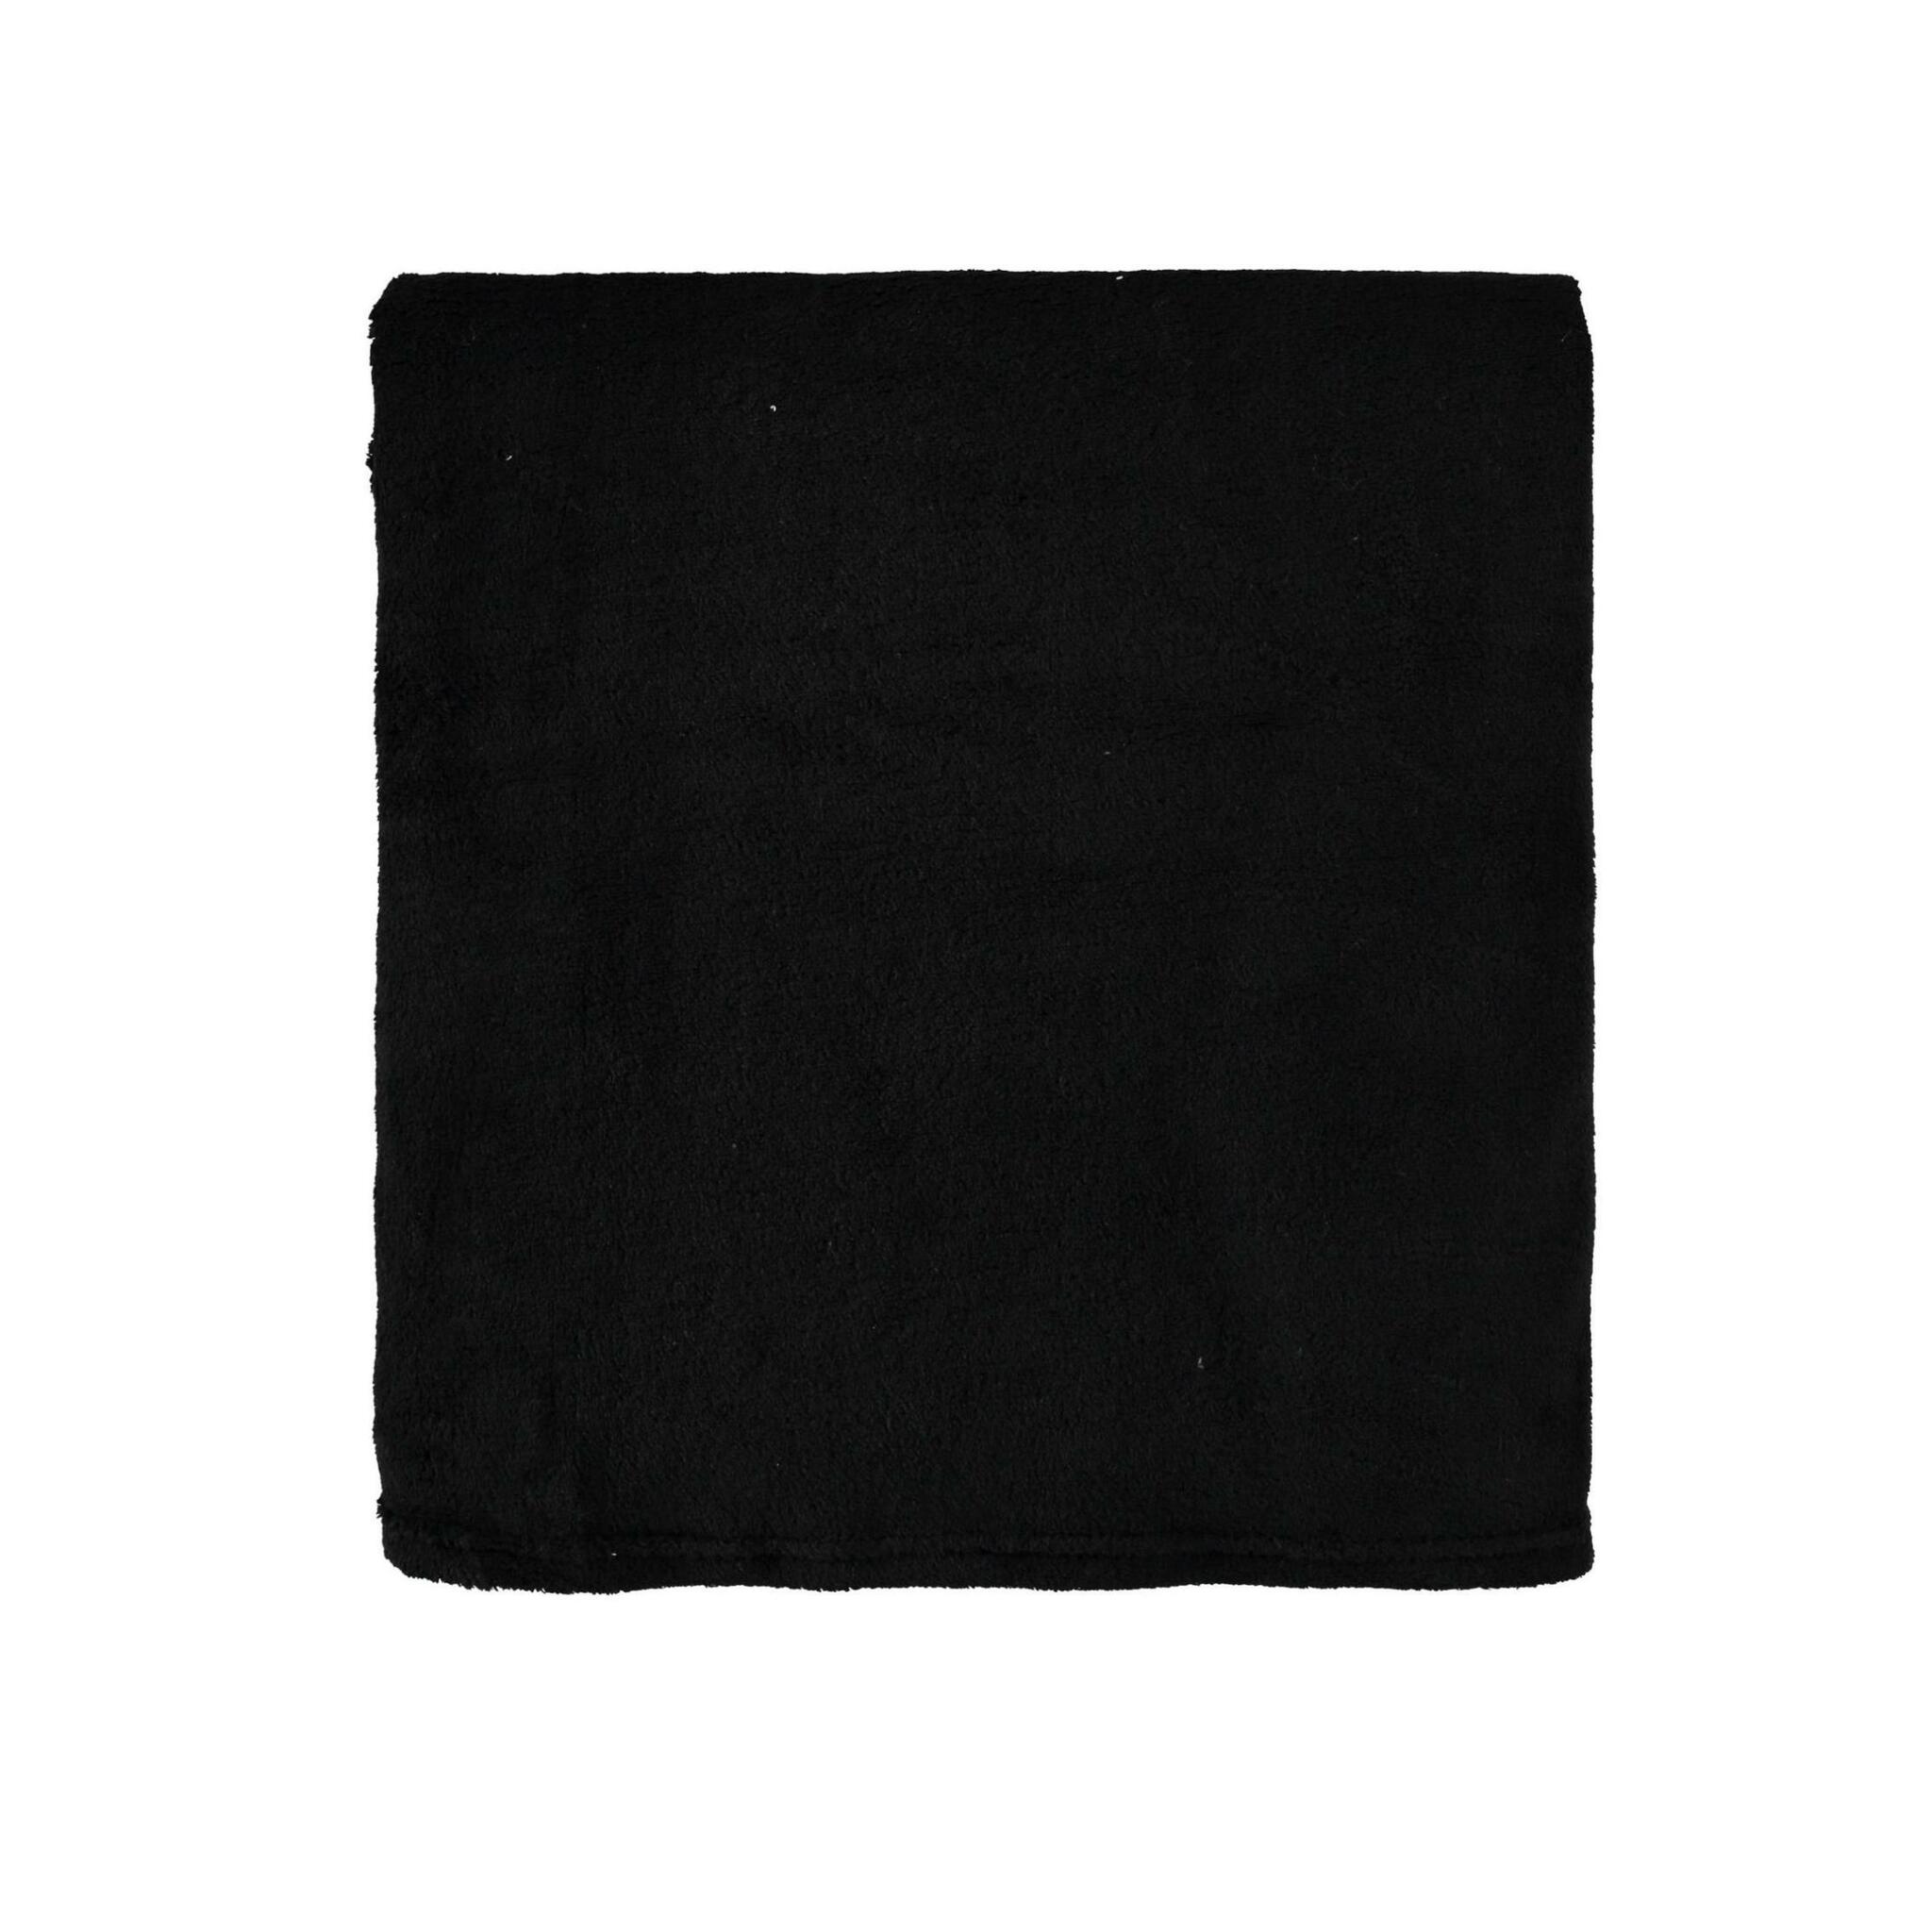 Irma en svart fleecepläd från Noble house mått 125 x 150 cm